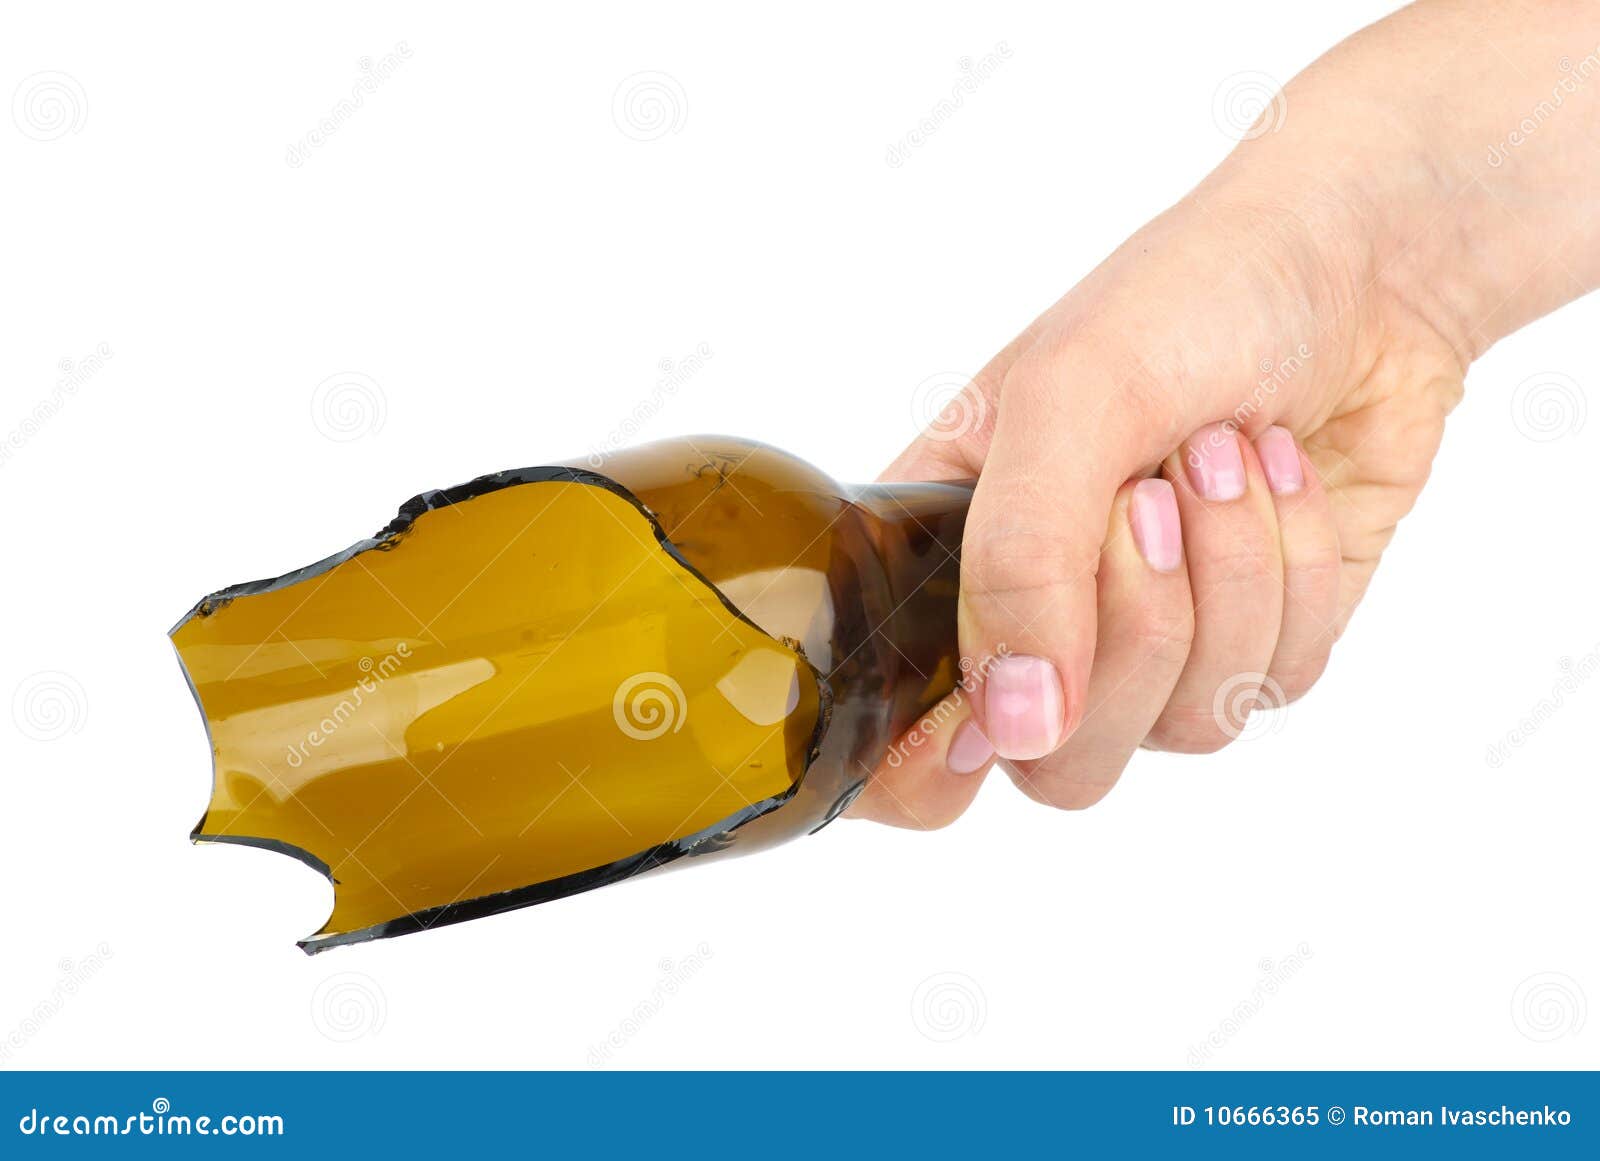 hand-holding-broken-bottle-10666365.jpg